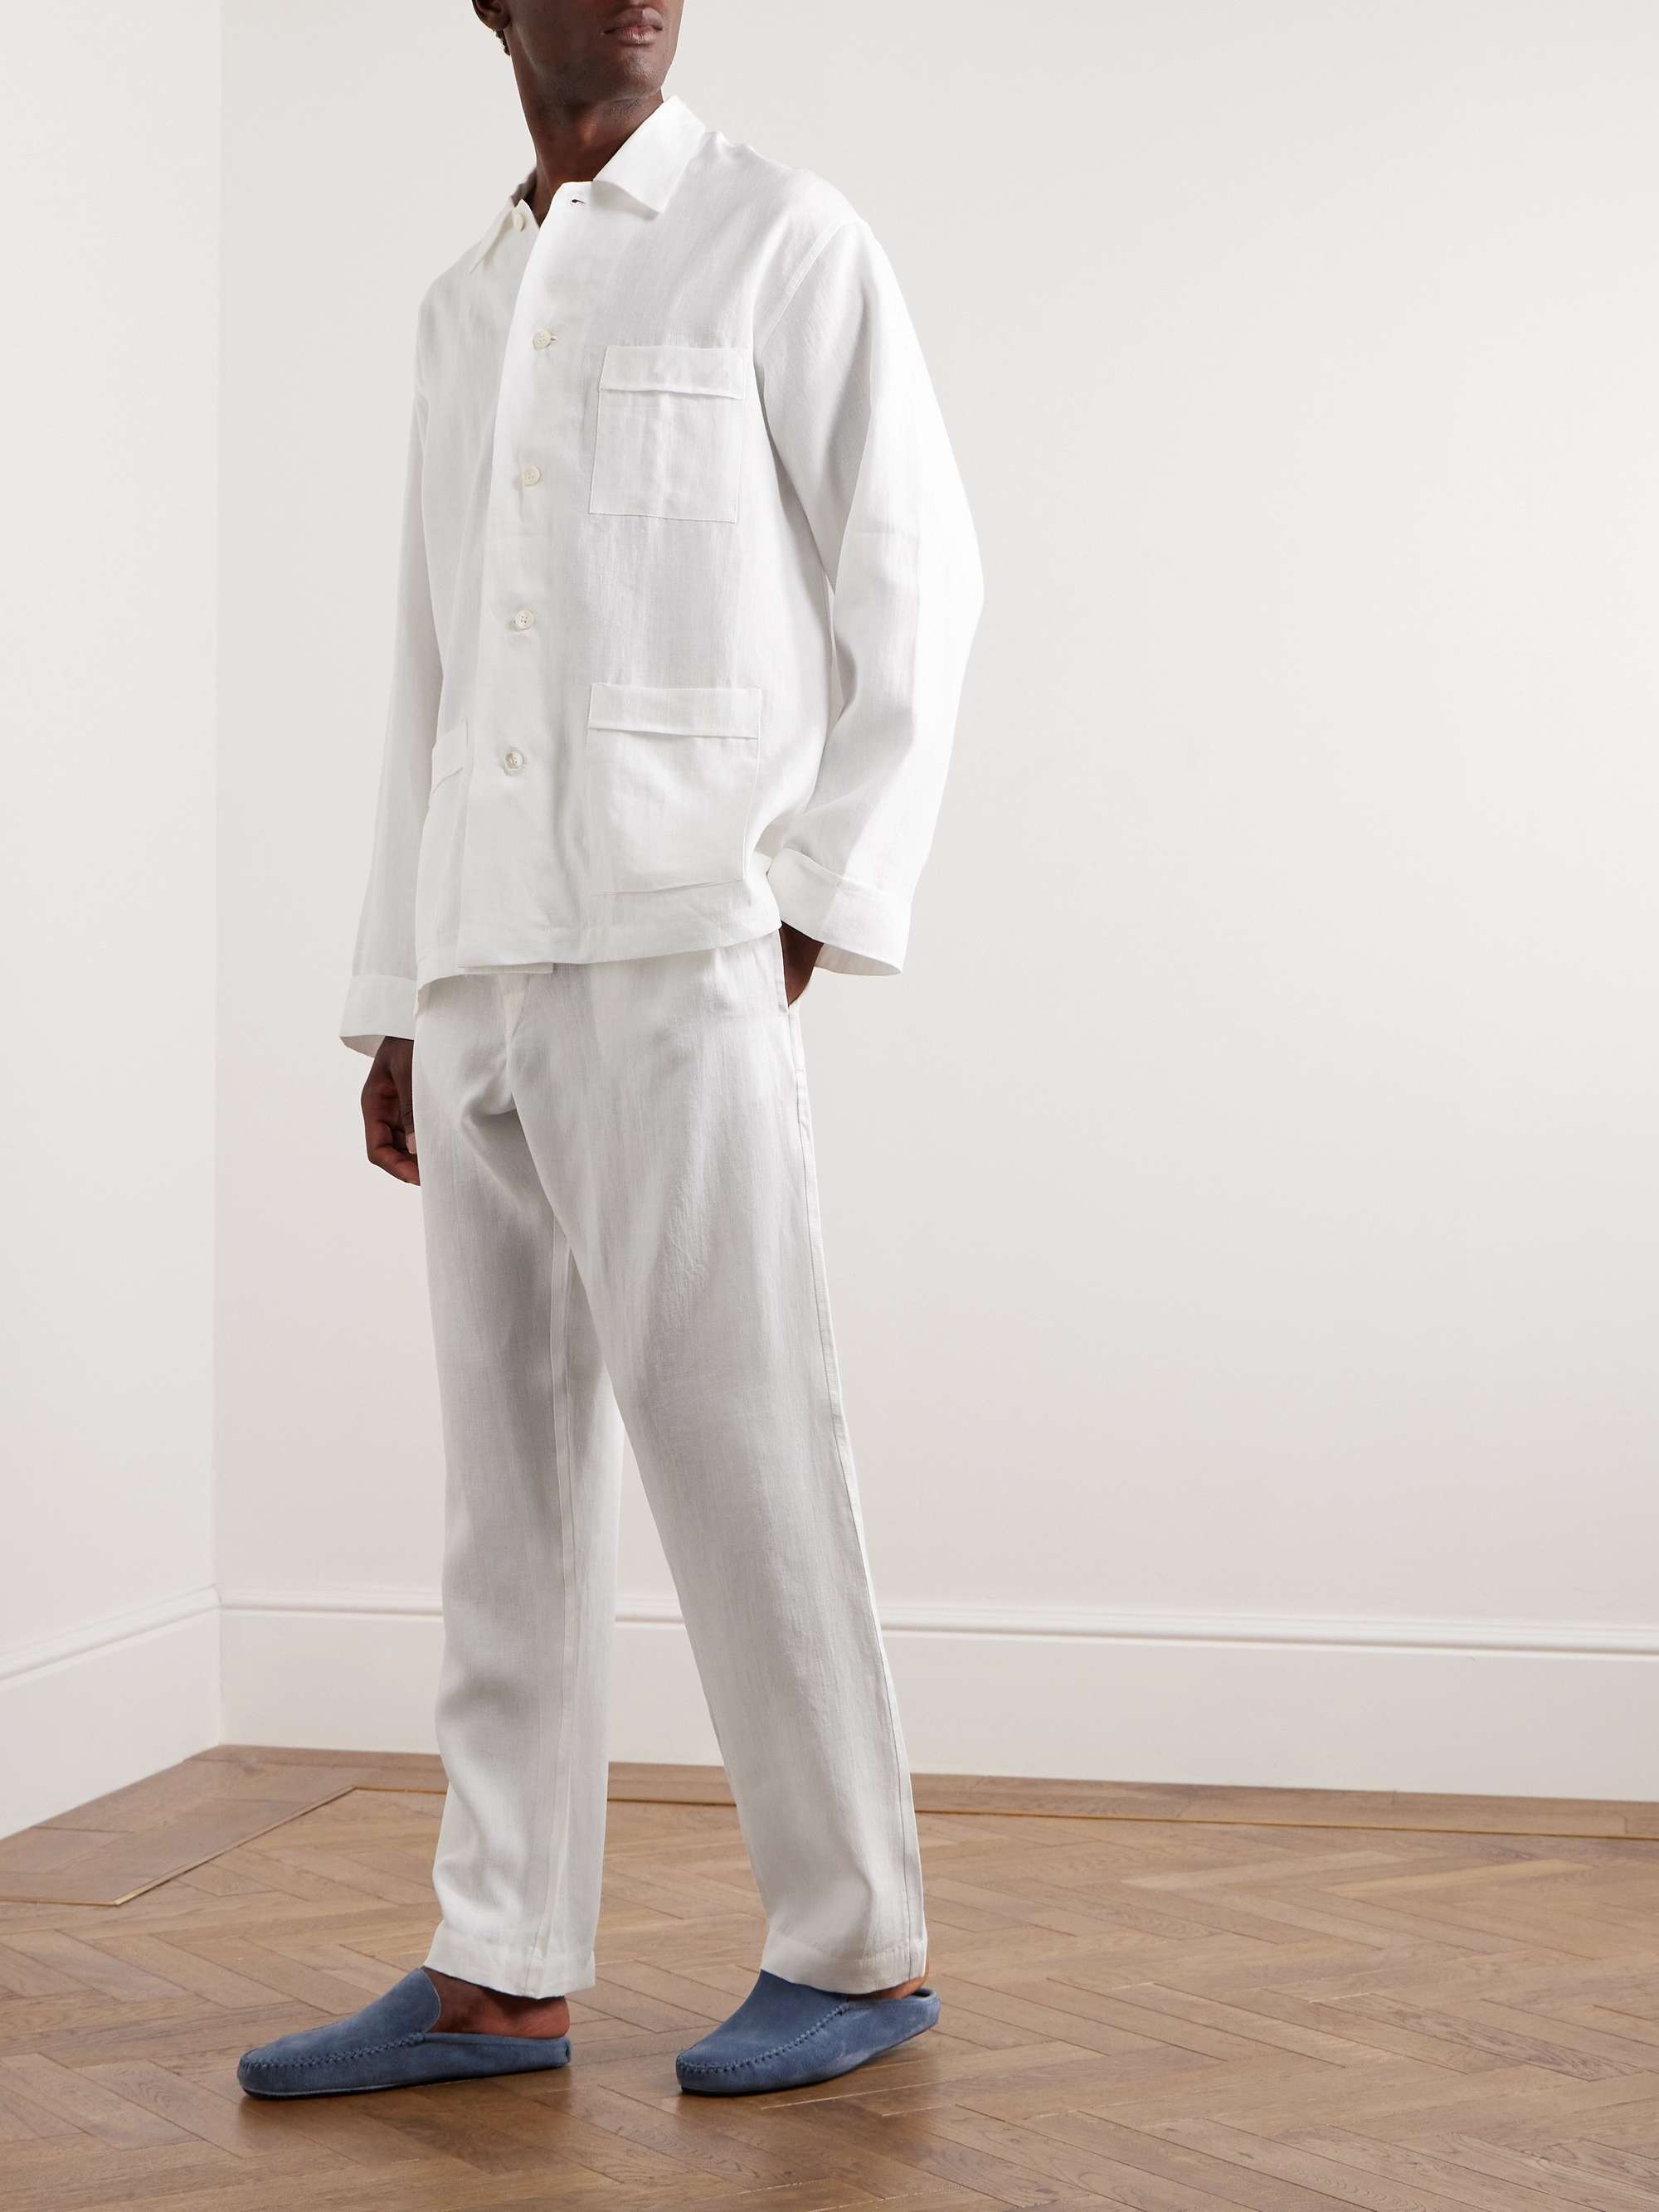 ANDERSON & SHEPPARD Linen Pyjama Set for Men | MR PORTER